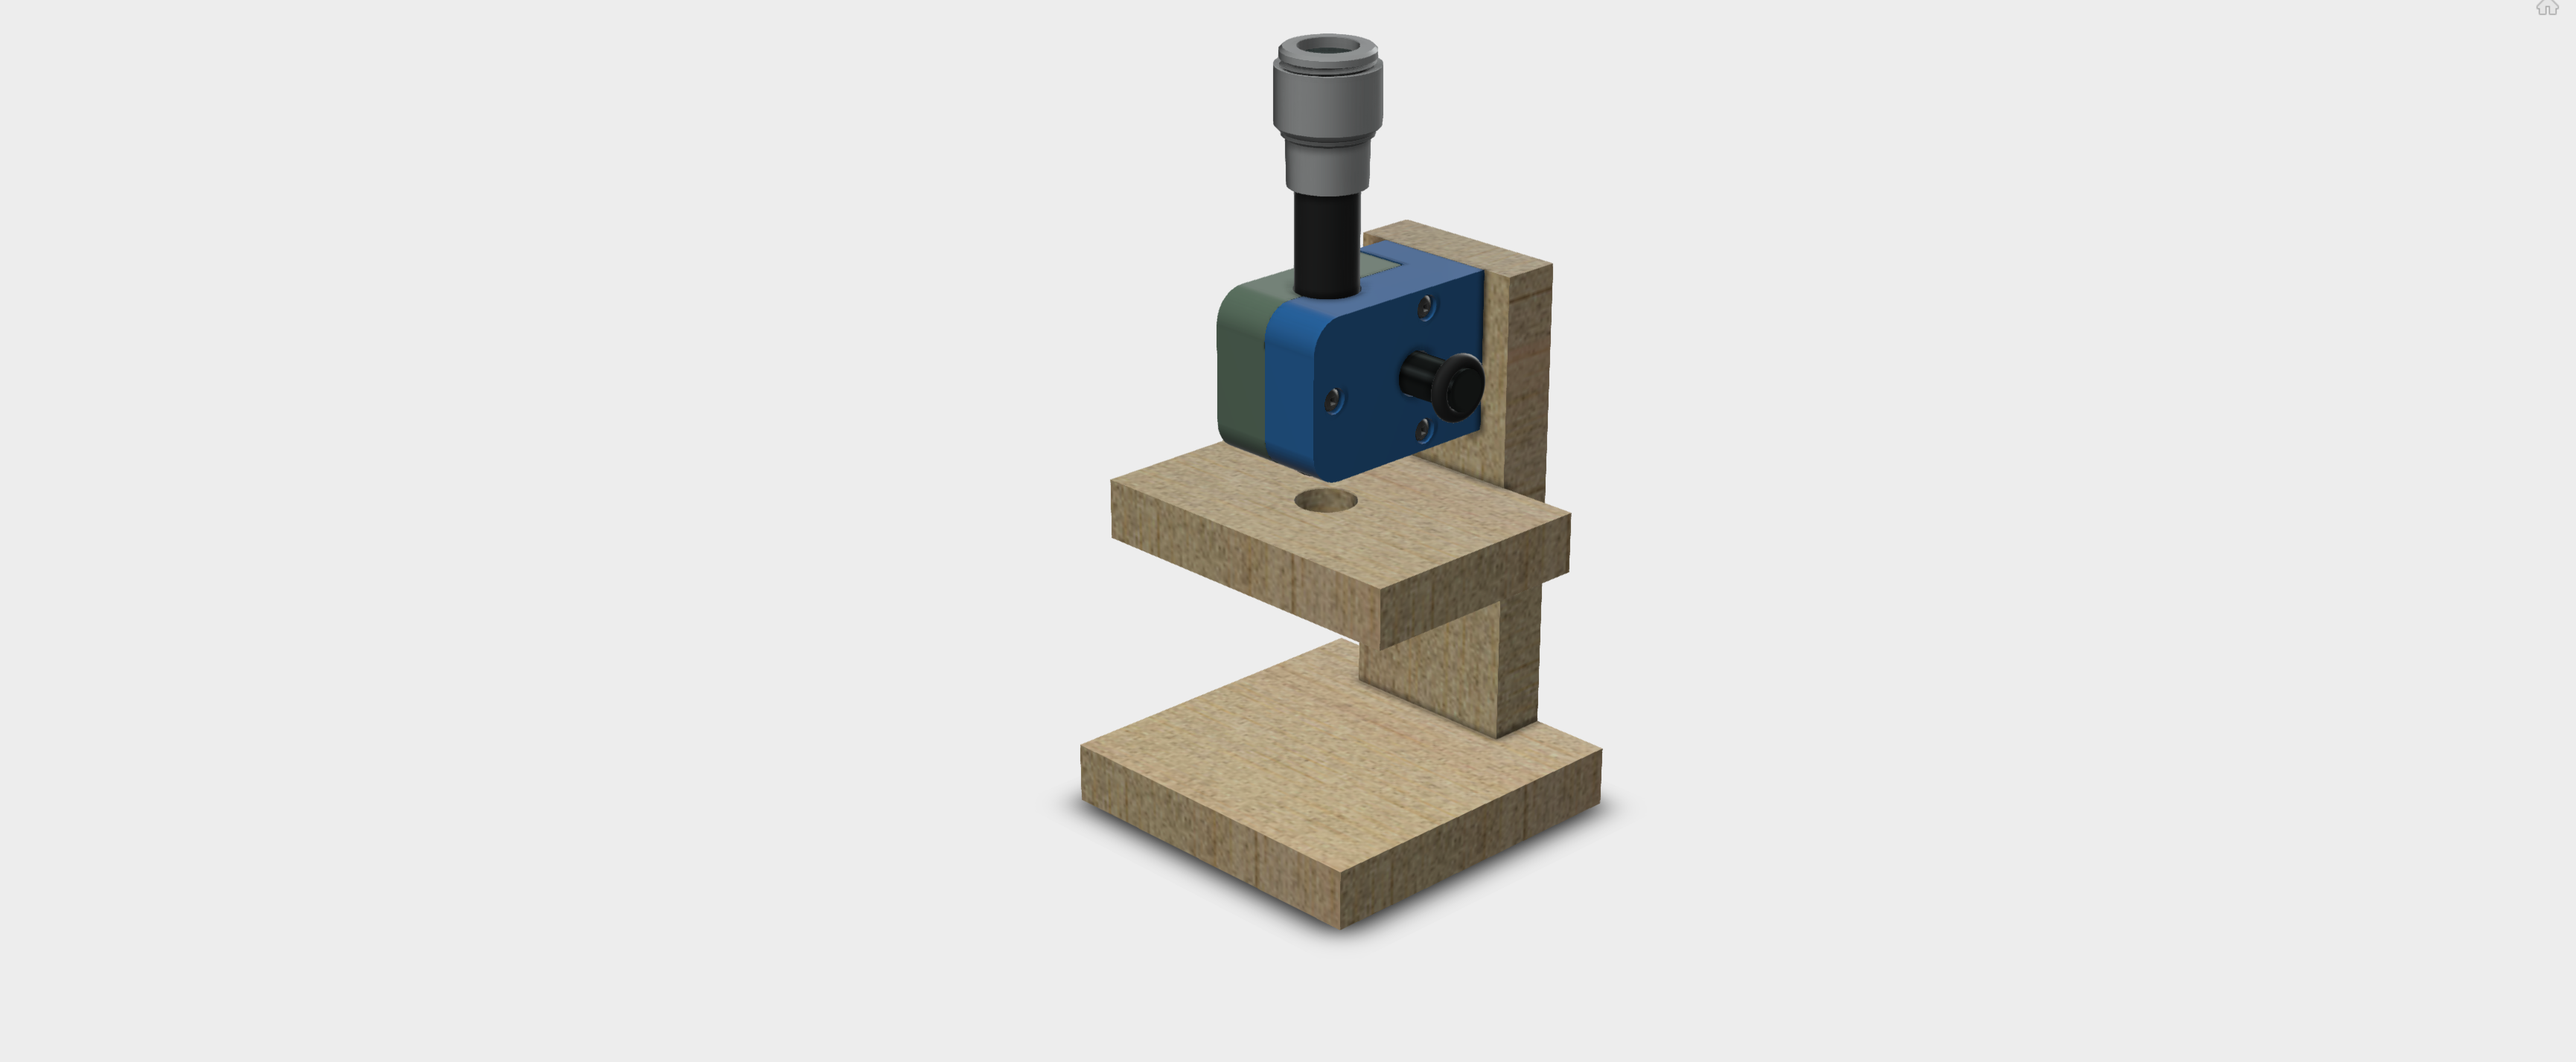 Projet du microscope imprimé 3D